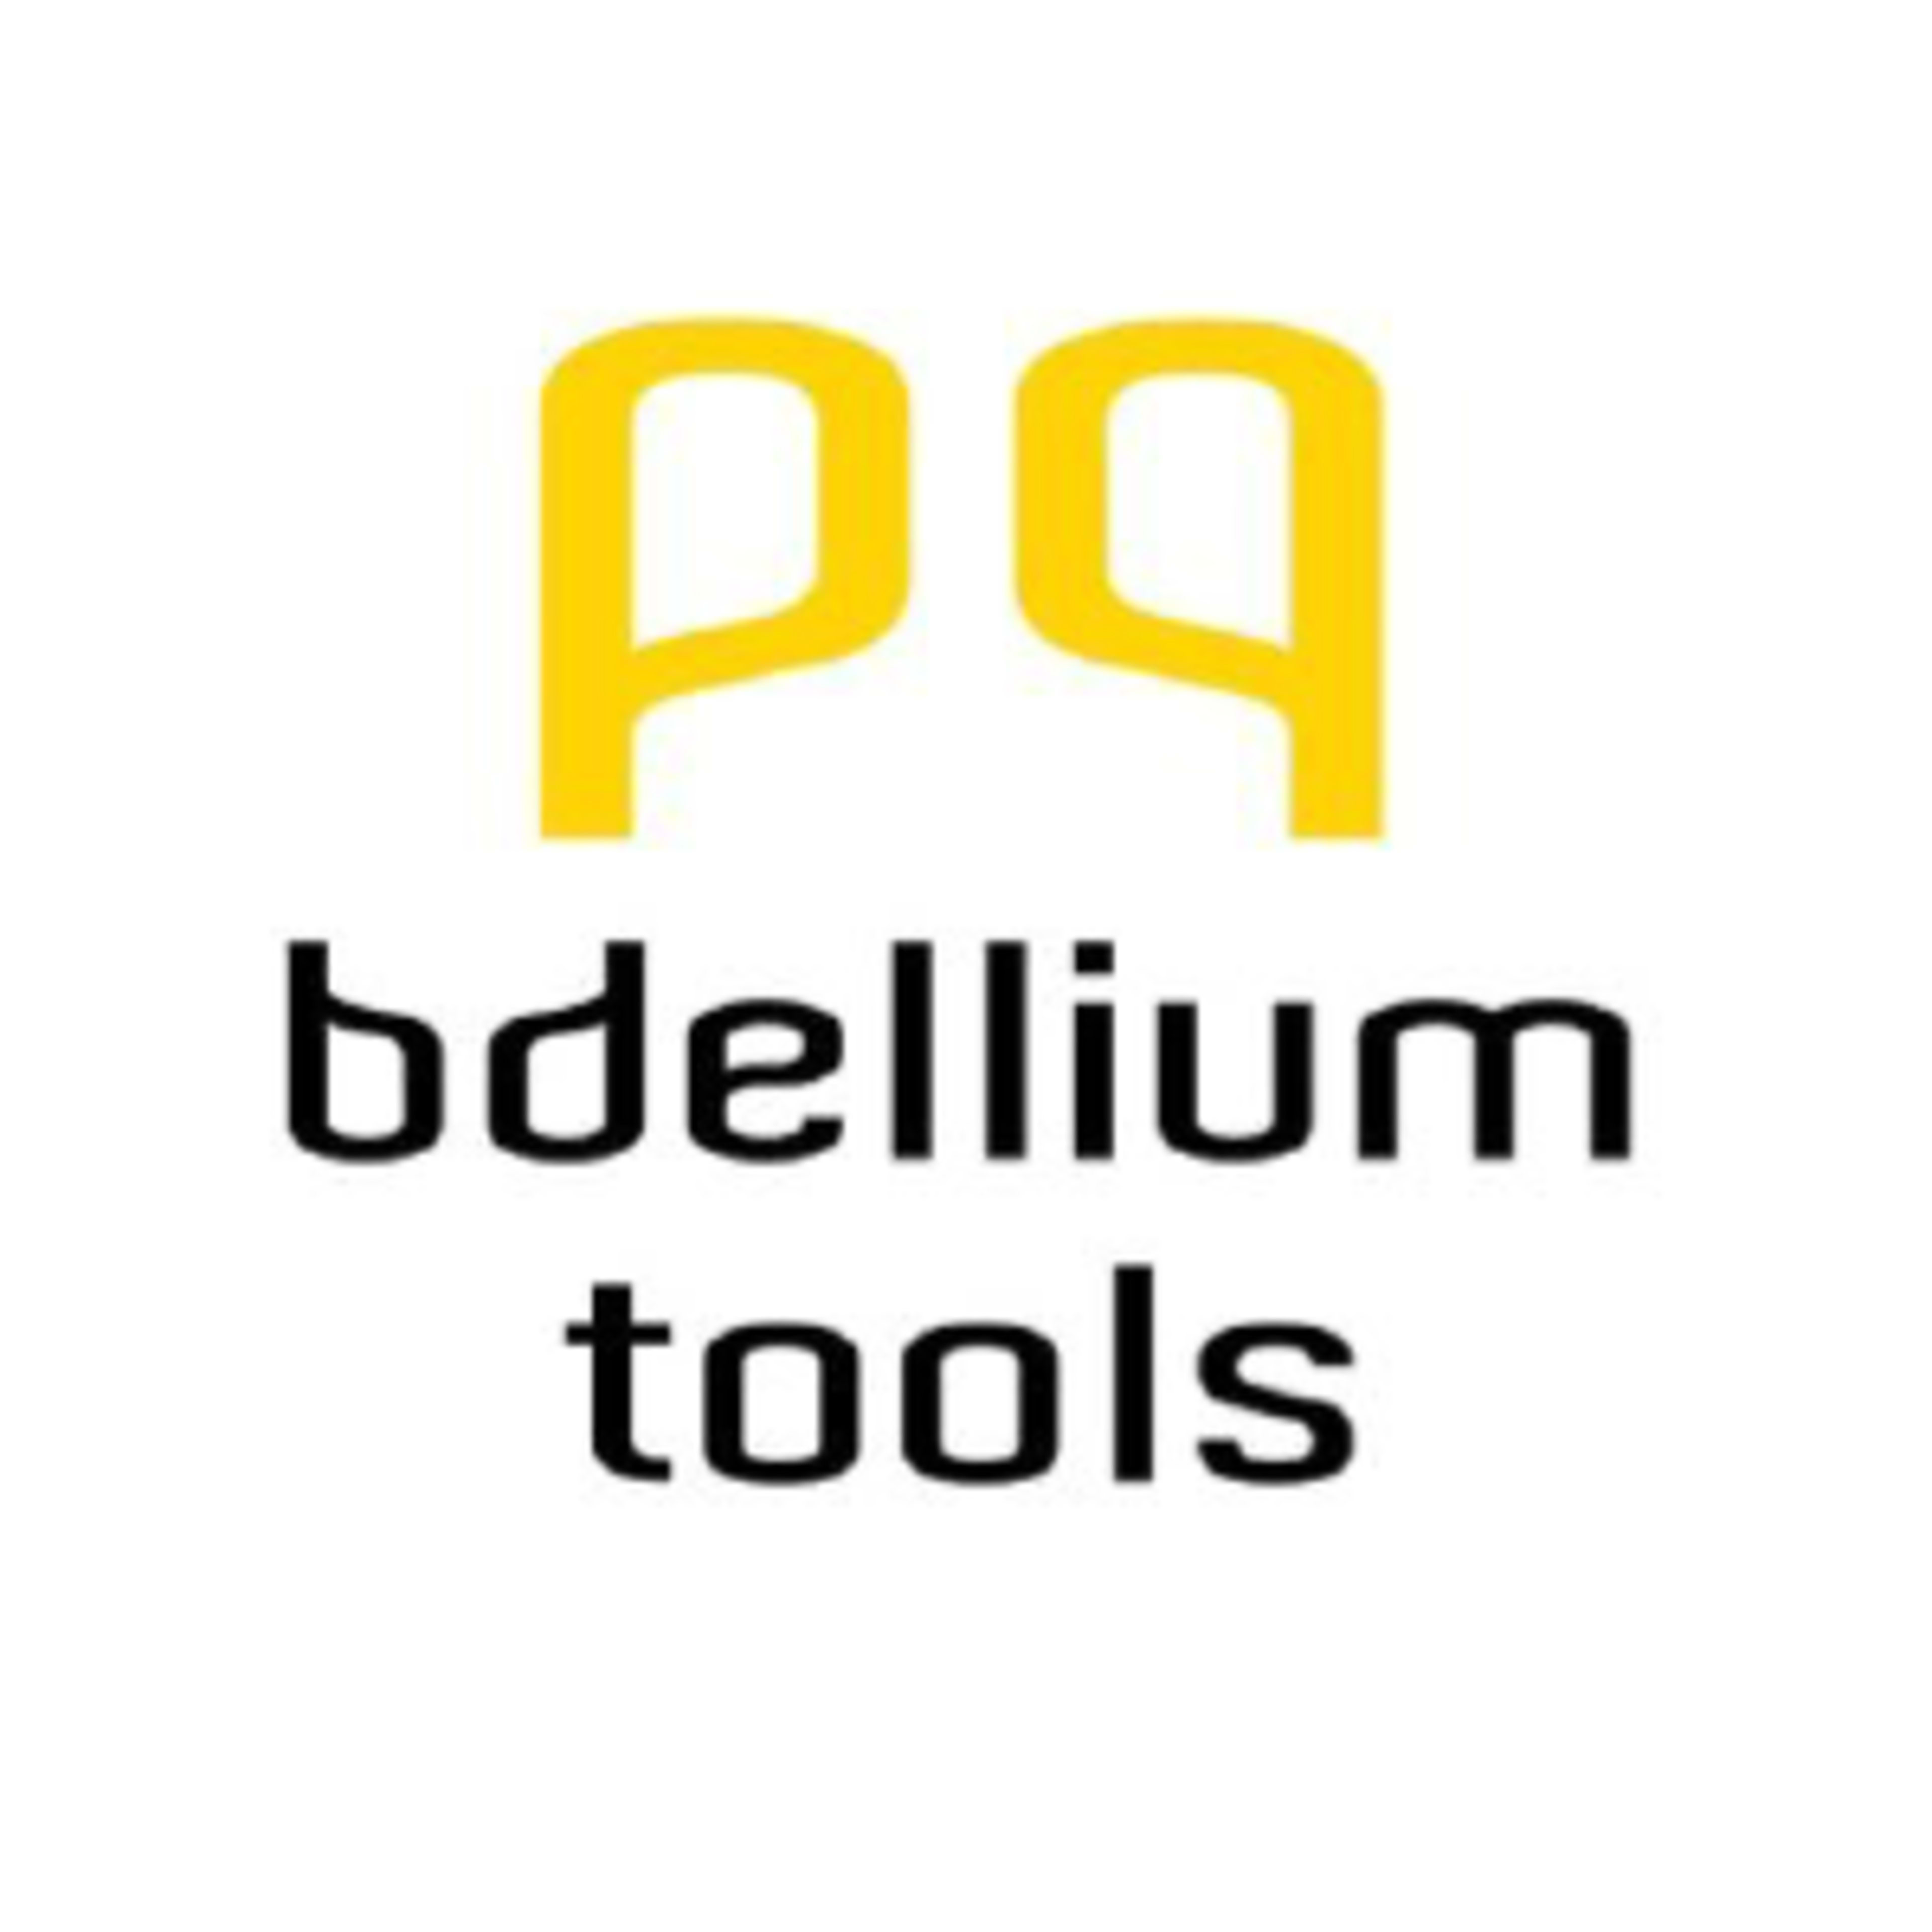 Bdellium ToolsCode